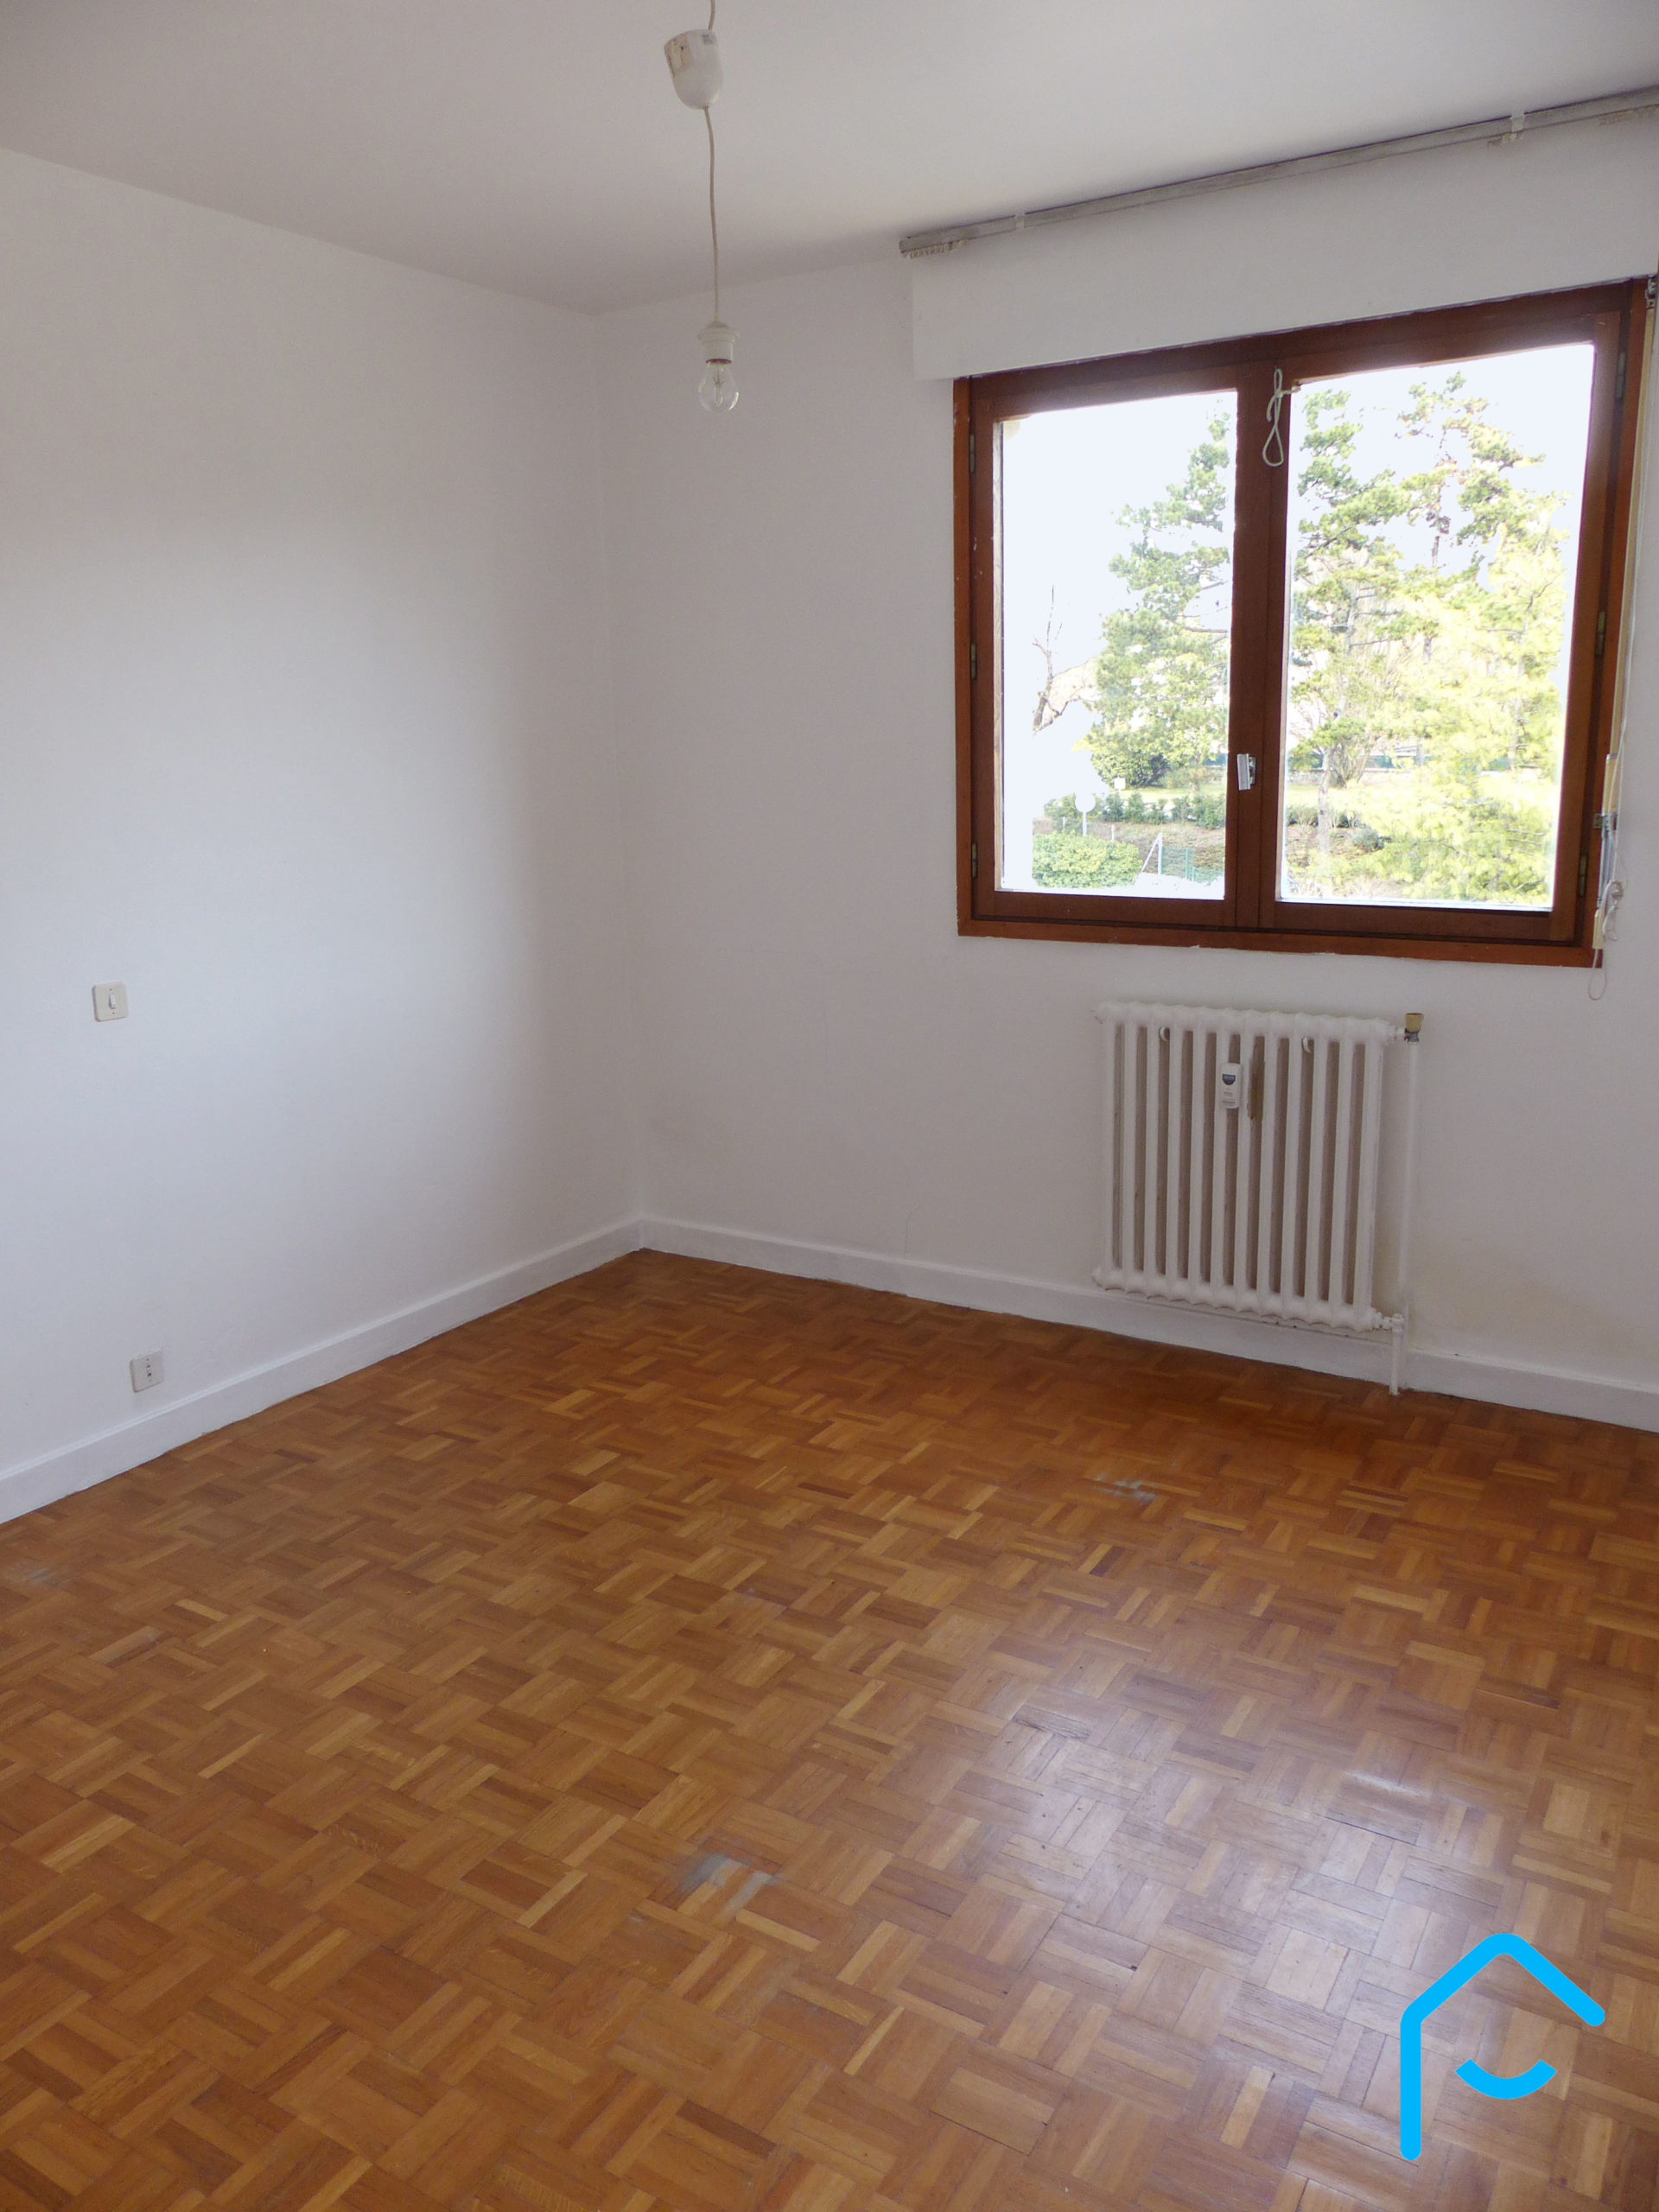 à vendre appartement T2 Chambéry Savoie investisseur chambre vue 2